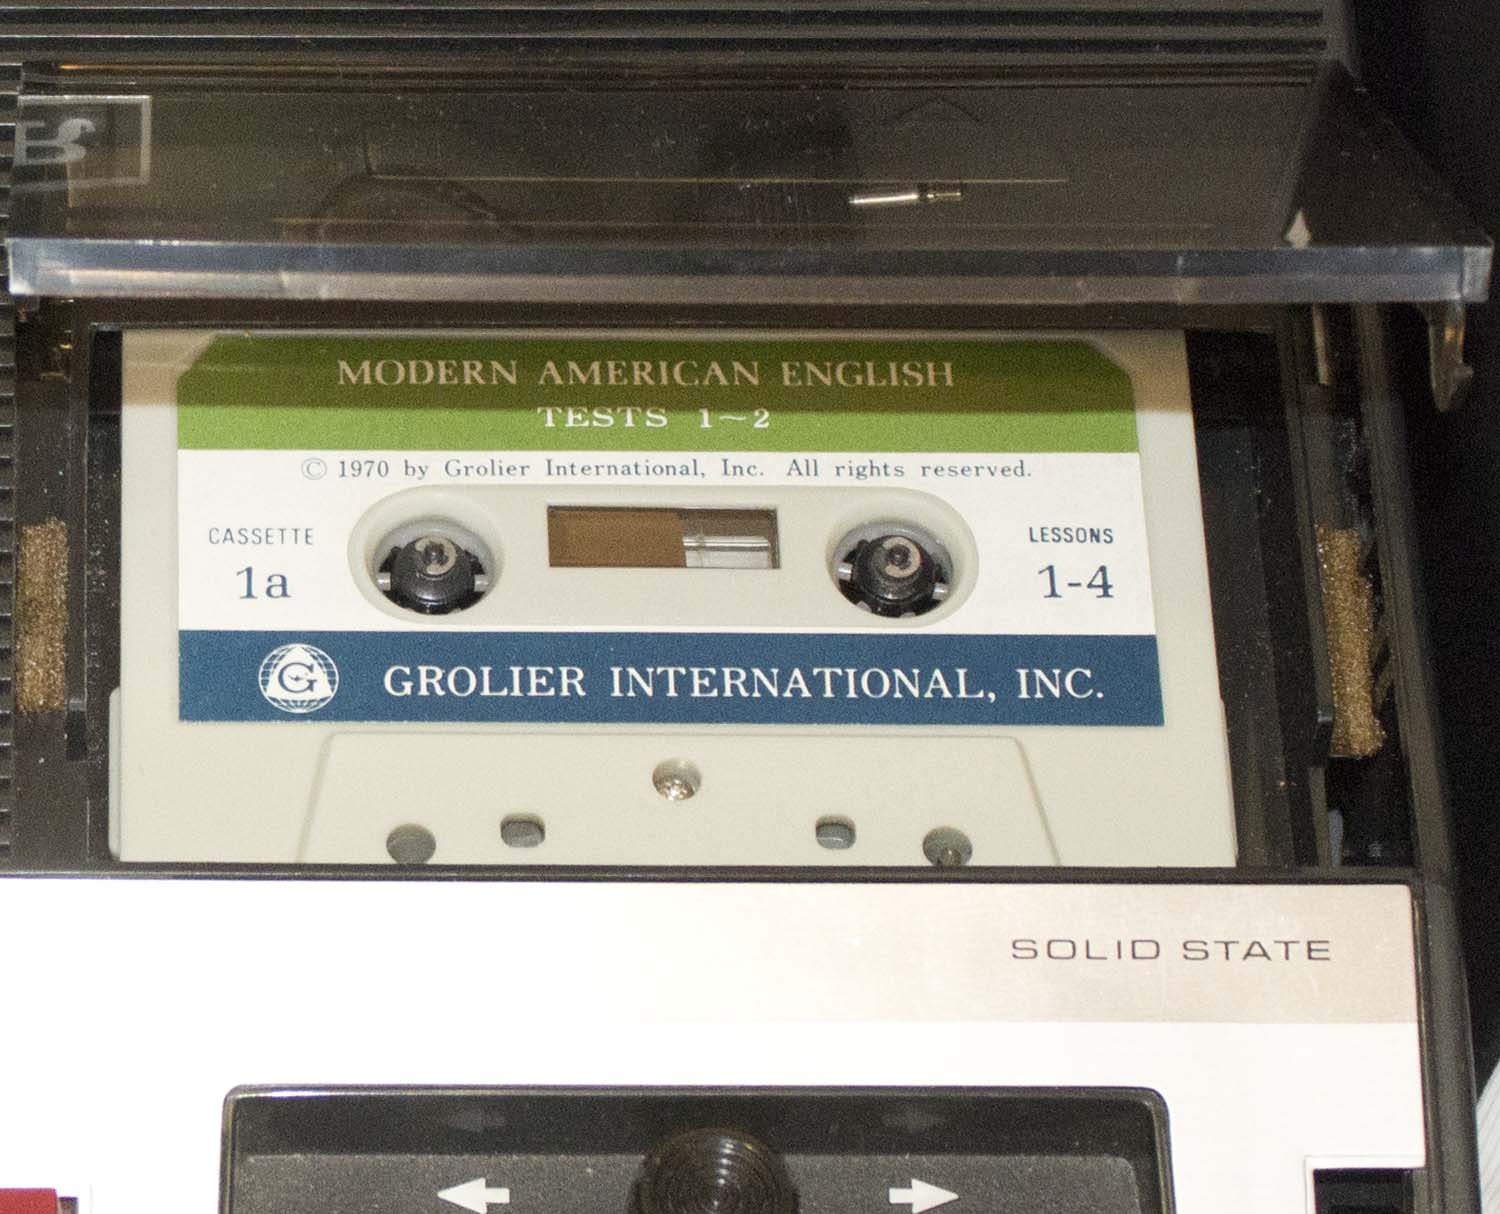 Лингафонная система "Modern American English" фирмы Grolier - Sanyo с магнитофоном, микрофоном, наушниками и кассетами 1970-е годы